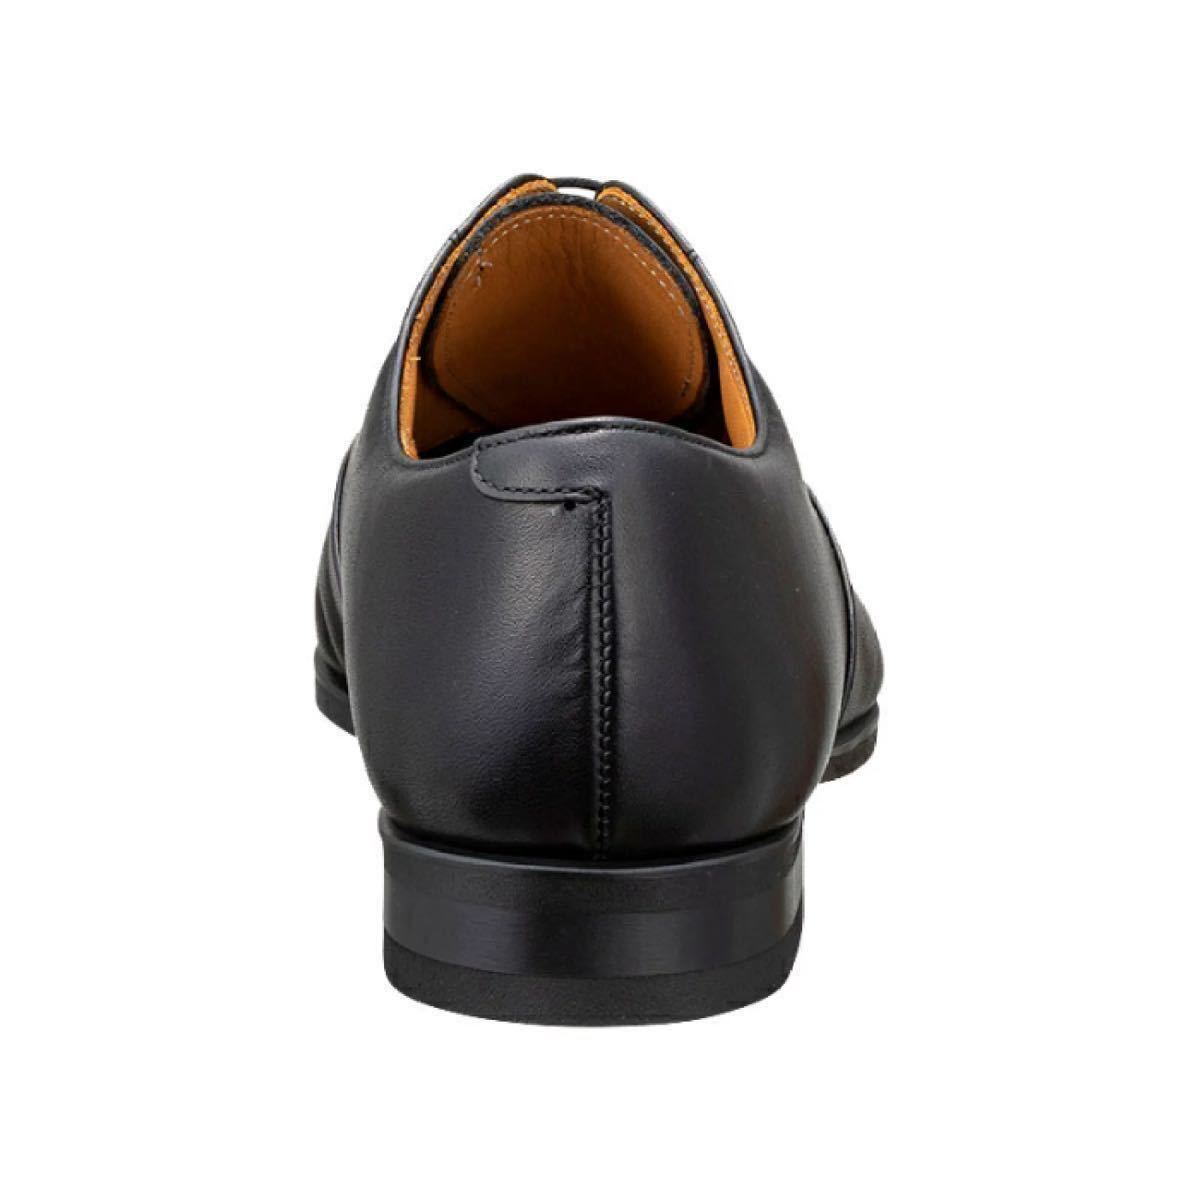 [ бесплатная доставка ] Reagal (REGAL) бизнес обувь 21CL BE черный новый товар коробка есть 25.0cm